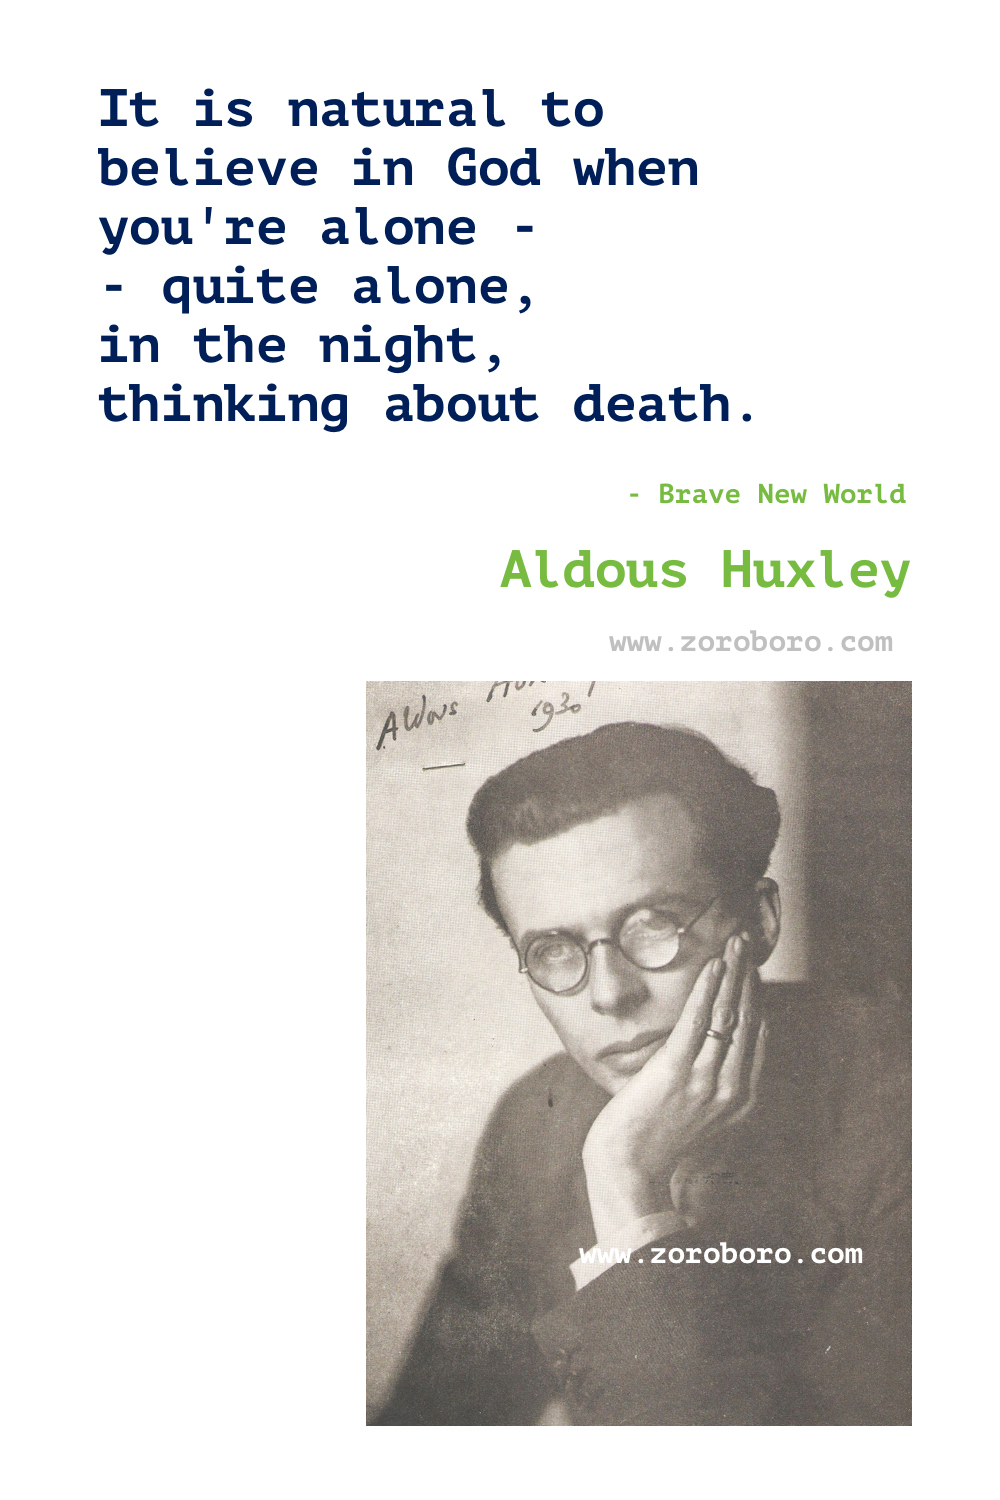 Aldous Huxley Quotes. Aldous Huxley Brave New World Quotes, Aldous Huxley Island (Huxley novel) & Aldous Huxley The Doors of Perception. Aldous Huxley Books Quotes.